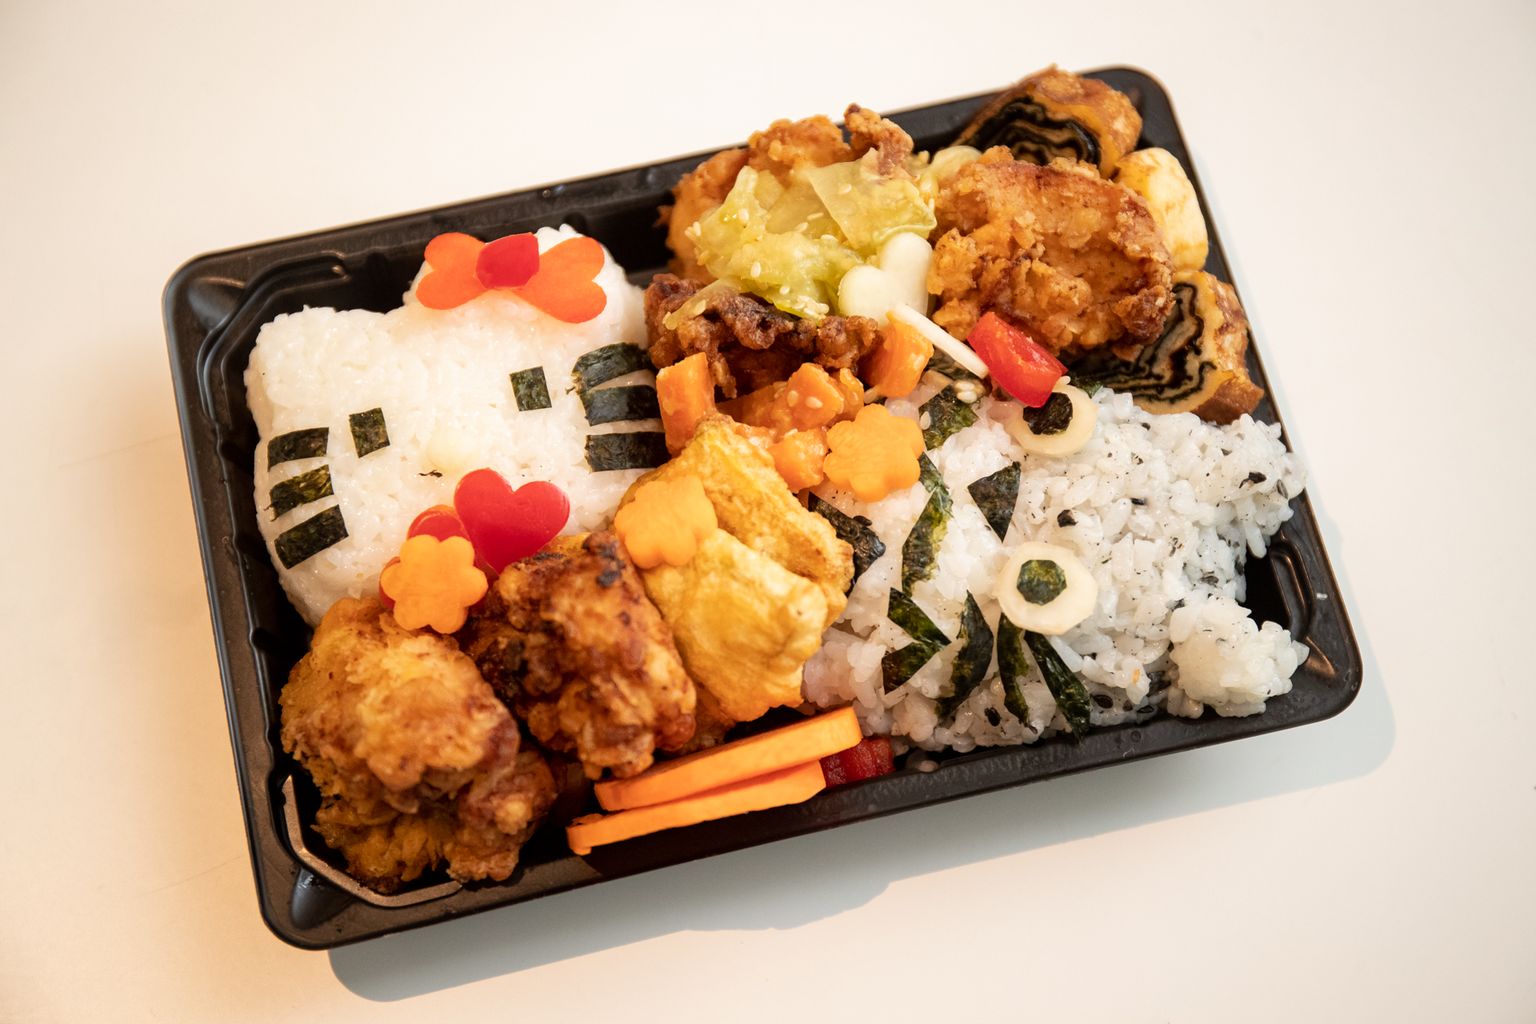 Bento ehk jaapanipärane lõunakarp.